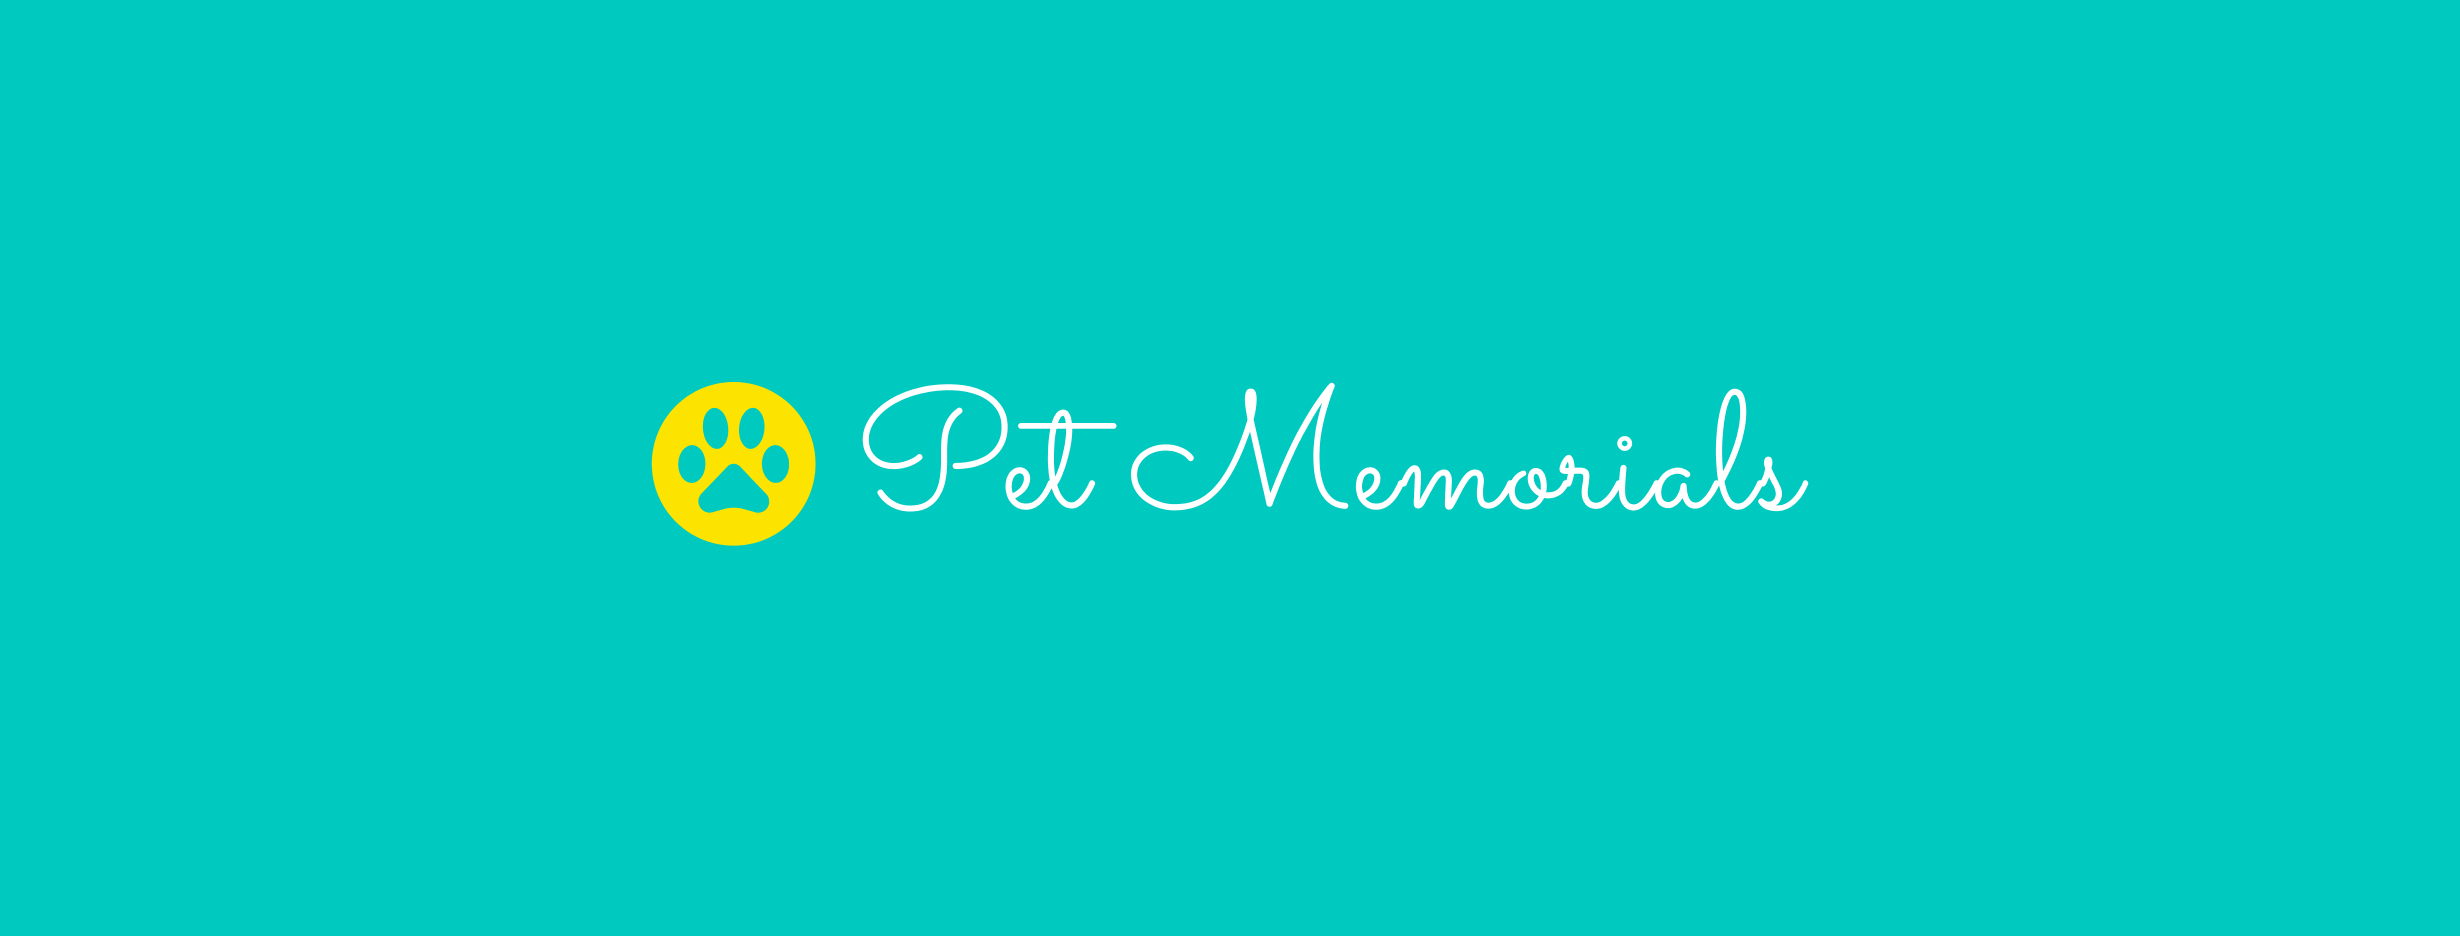 Pet Memorials logo